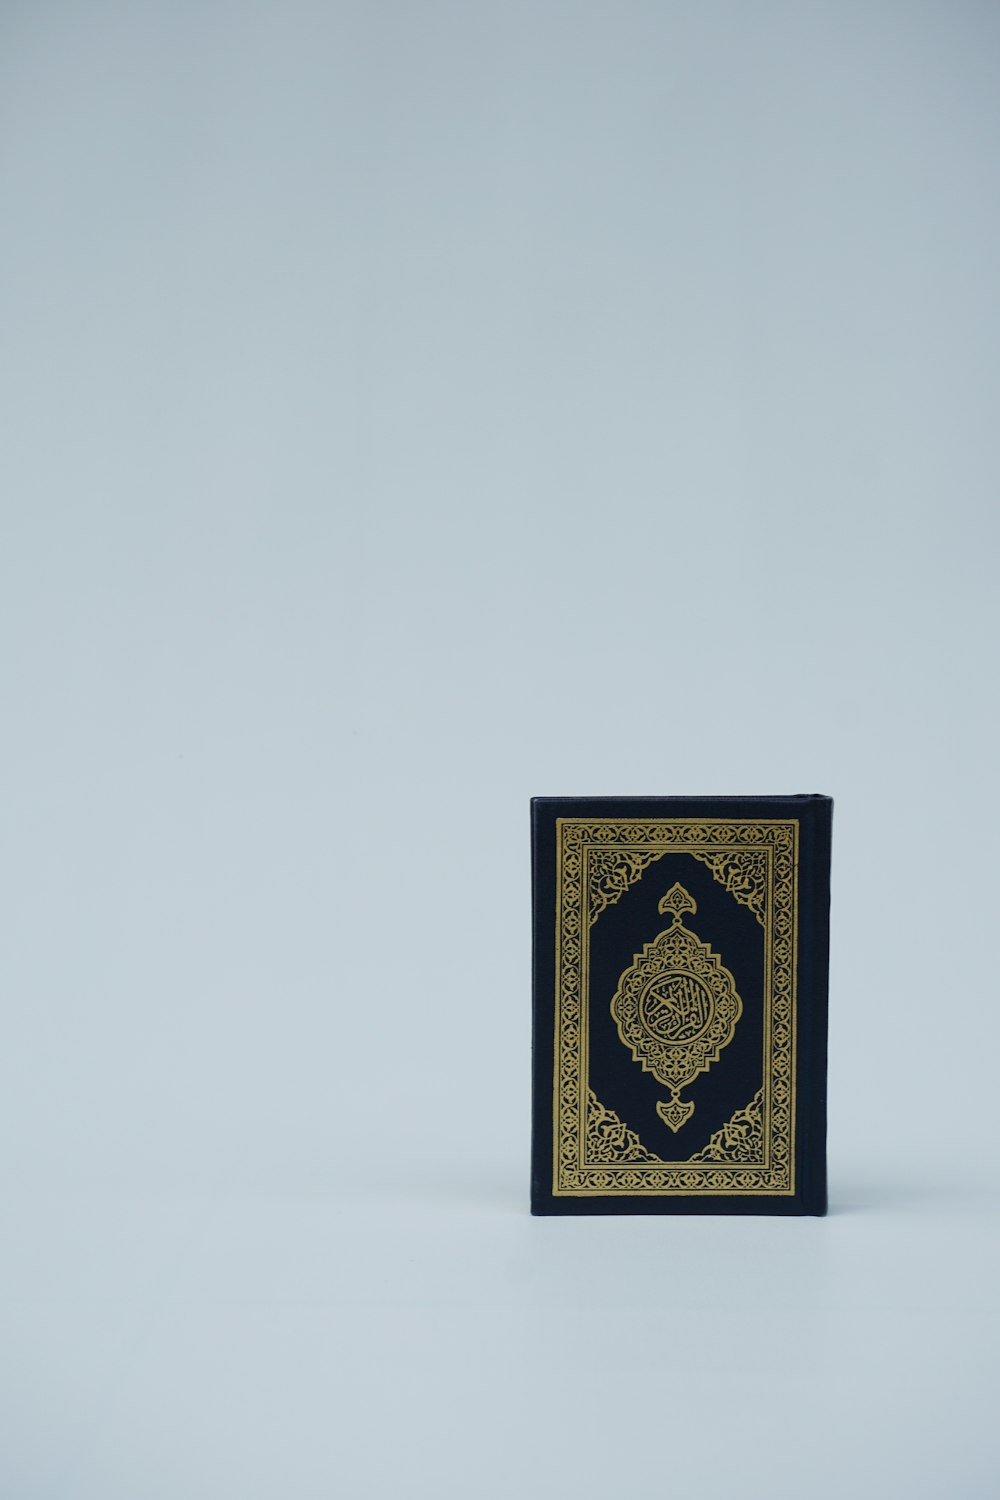 Un livre noir et or posé sur une table